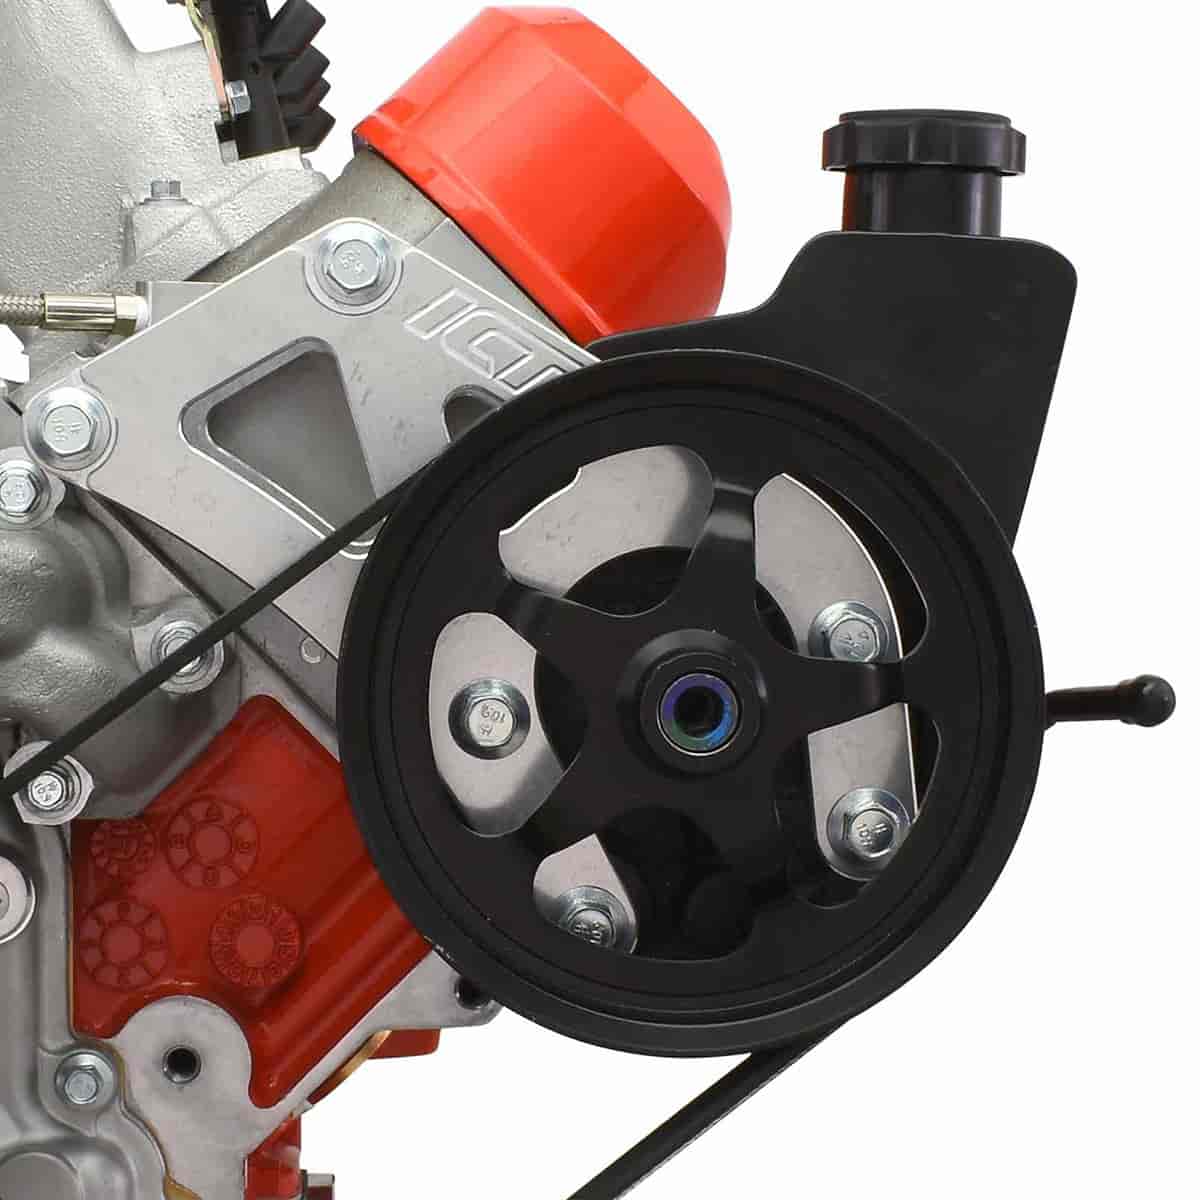 Type 1 Saginaw Power Steering Pump Bracket Kit [GM Truck, LS Swap]